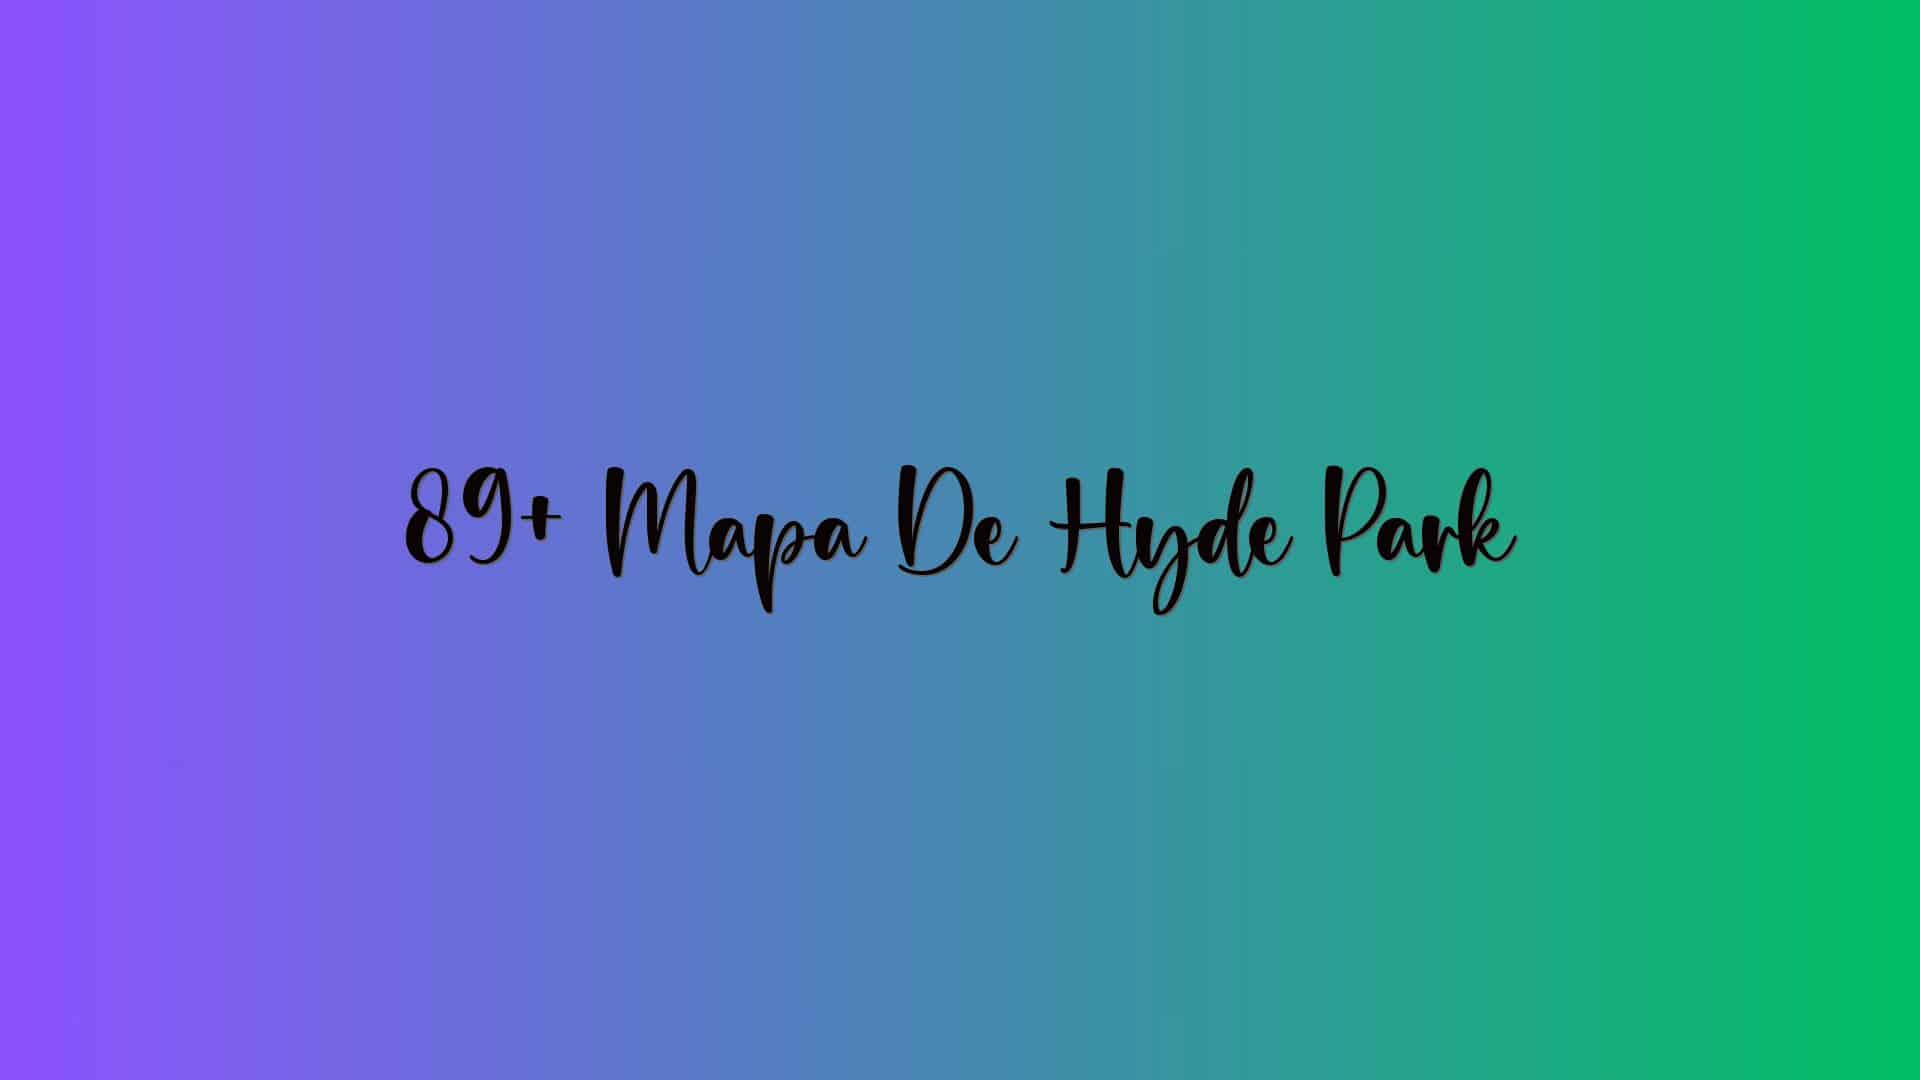 89+ Mapa De Hyde Park